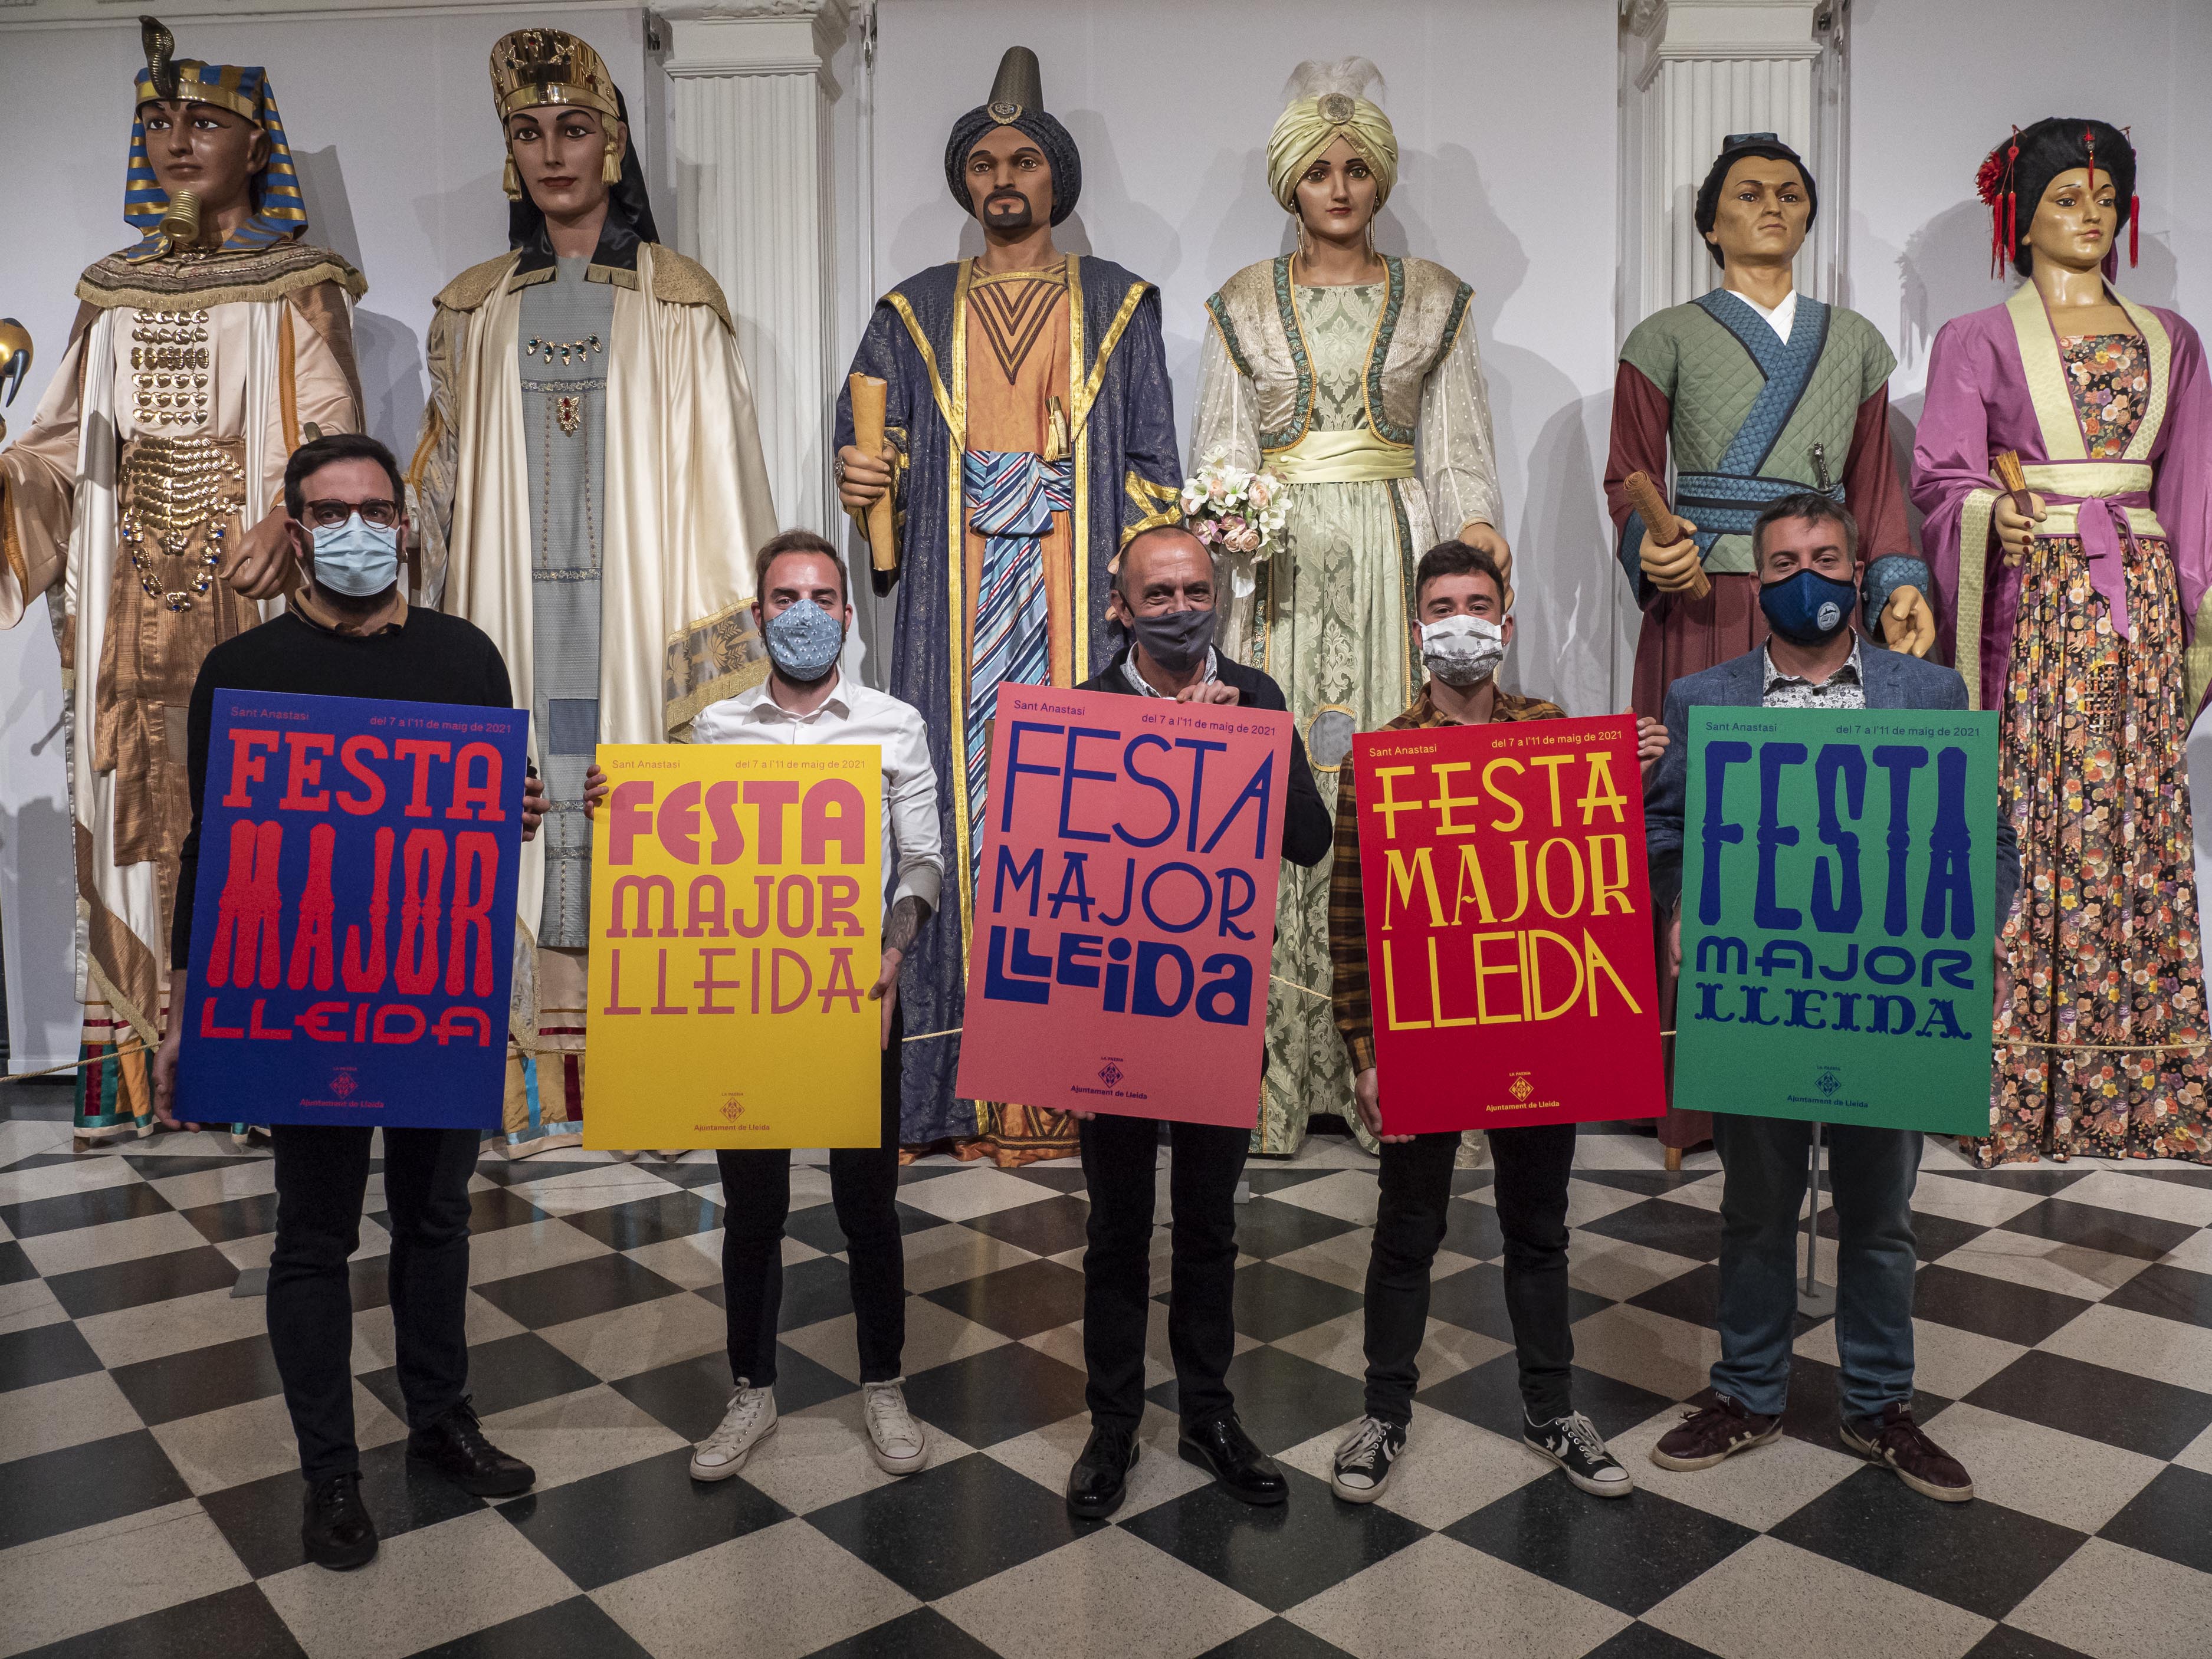 El paer en cap, Miquel Pueyo, i el regidor de Joventut, Festes i Tradicions, Ignasi Amor, han presentat aquest dimarts la programació de la Festa Major de Lleida que se celebrarà del 7 a l’11 de maig